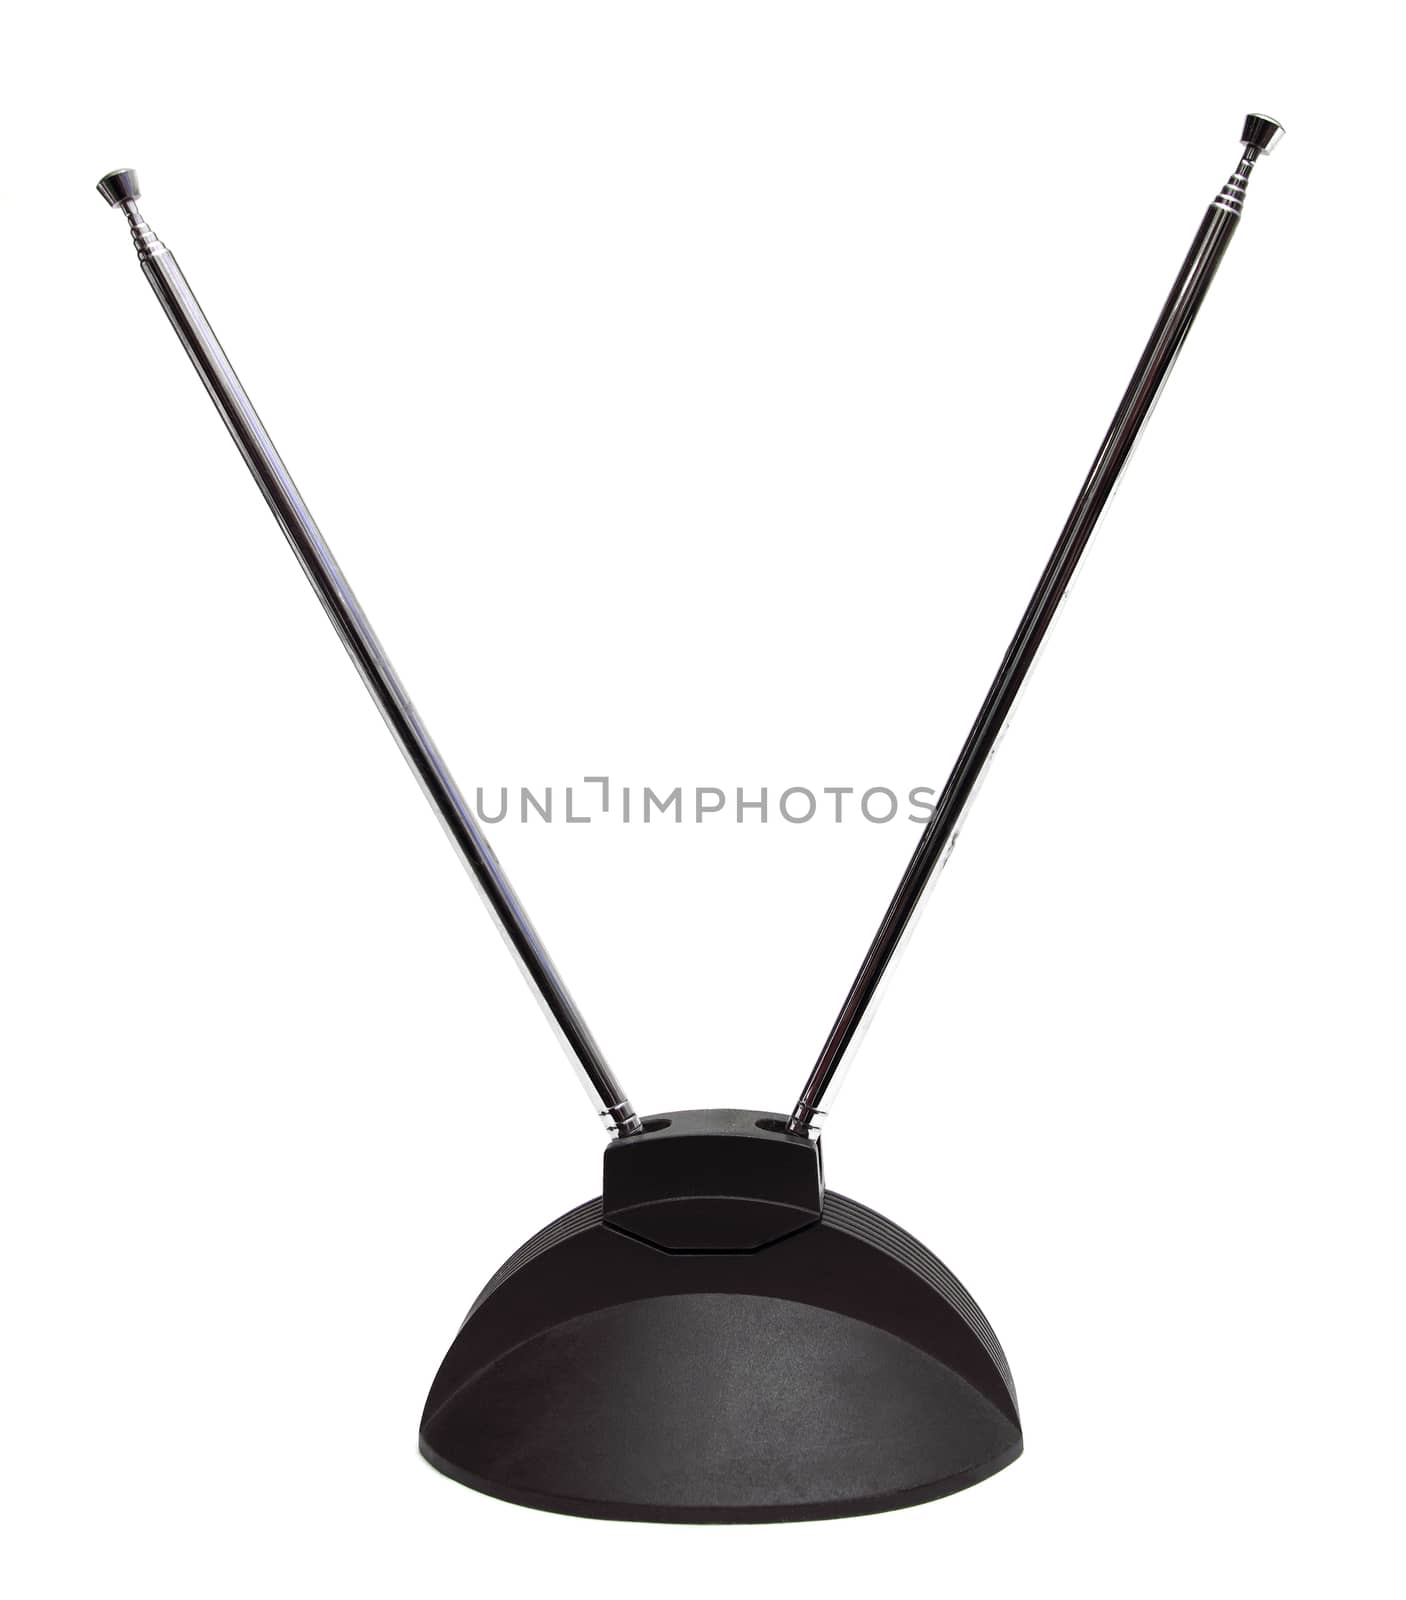 old antenna by gdvcom